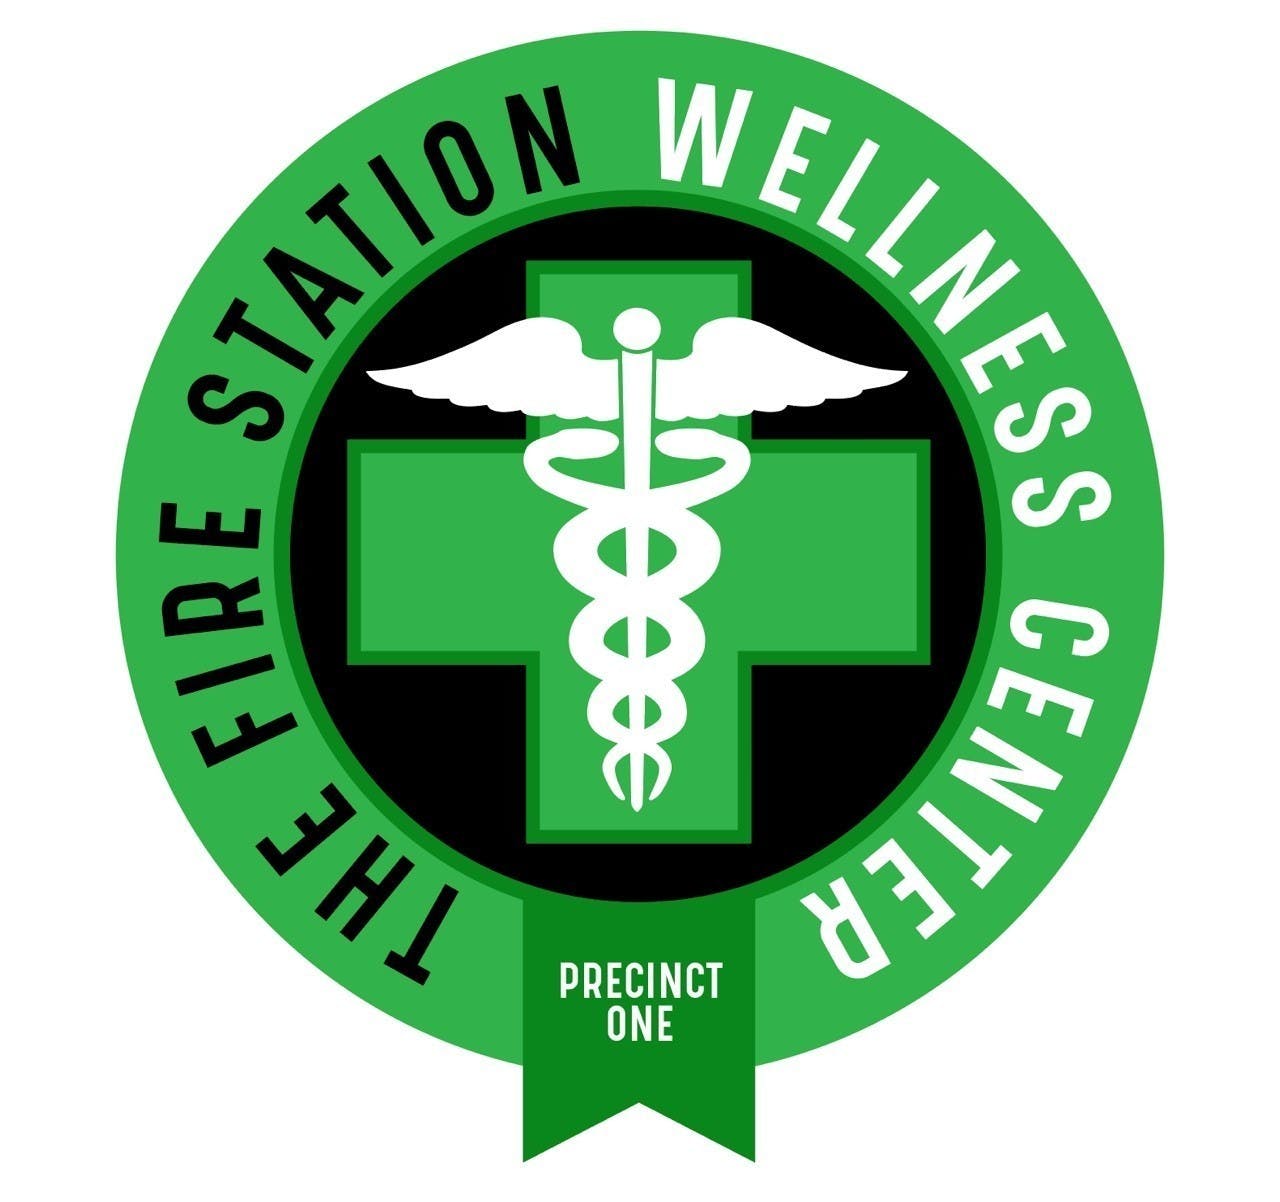 The Fire Station Wellness Center - Medical Marijuana Doctors - Cannabizme.com